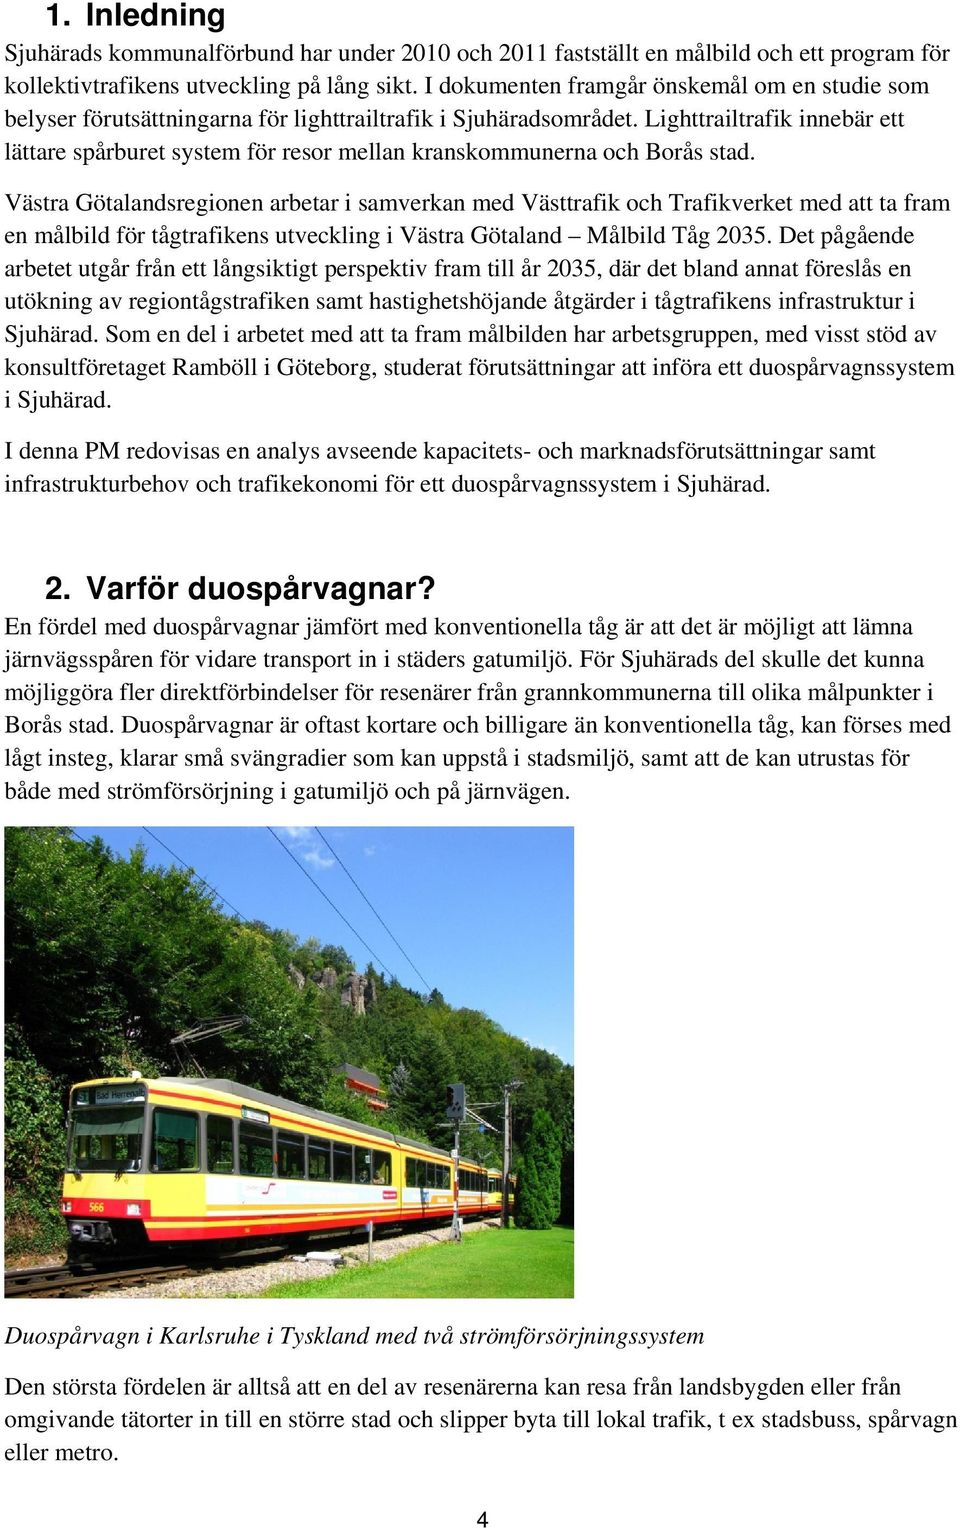 Lighttrailtrafik innebär ett lättare spårburet system för resor mellan kranskommunerna och Borås stad.